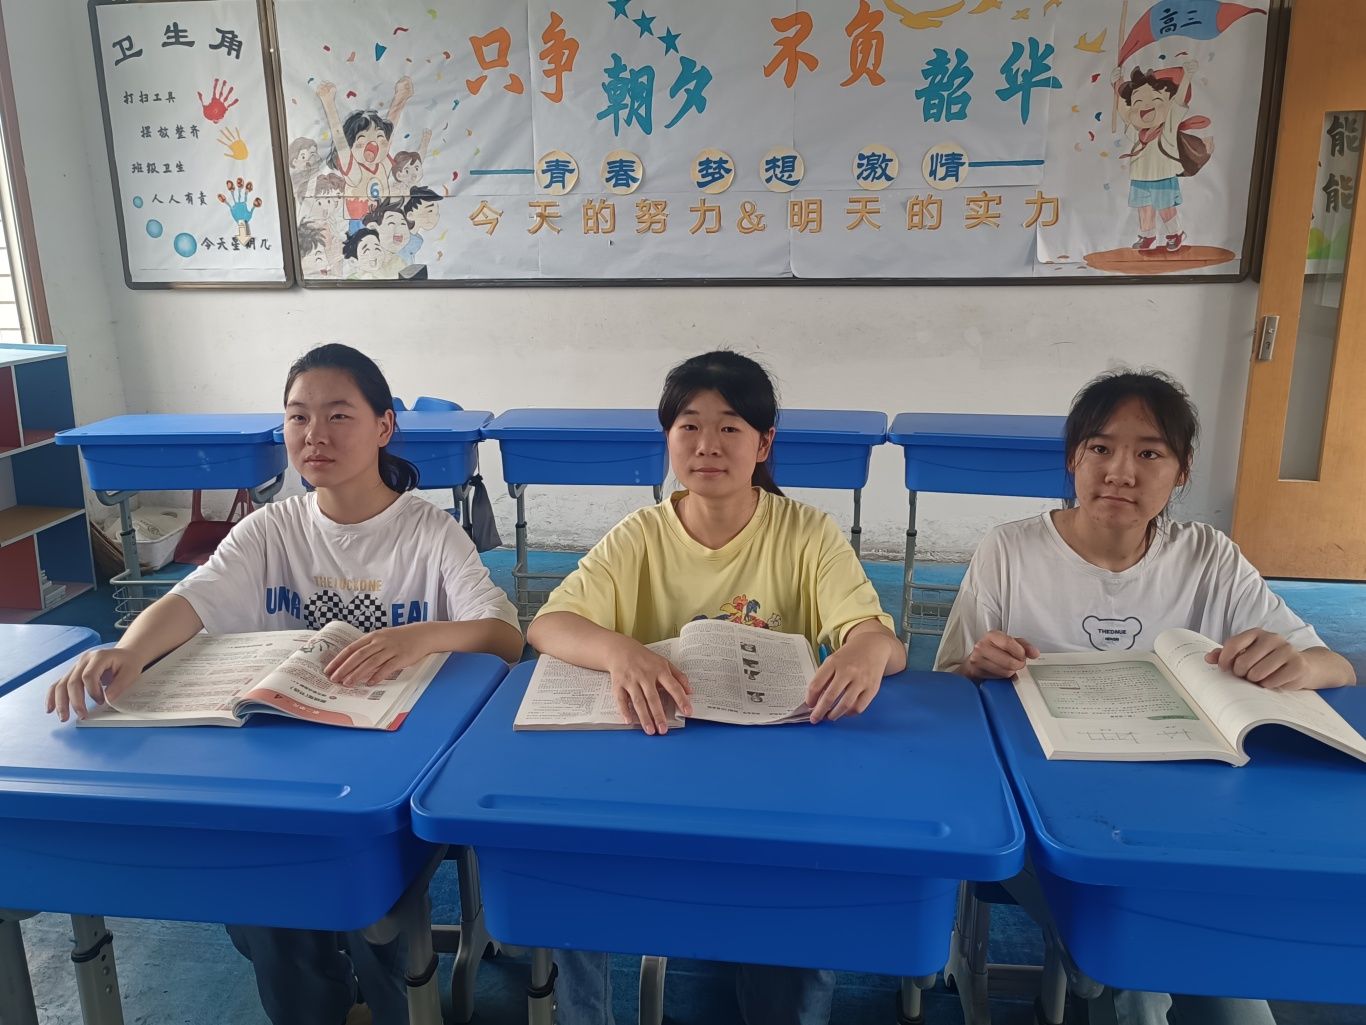  祝贺！襄阳市特教学校三名听障生考取本科院校